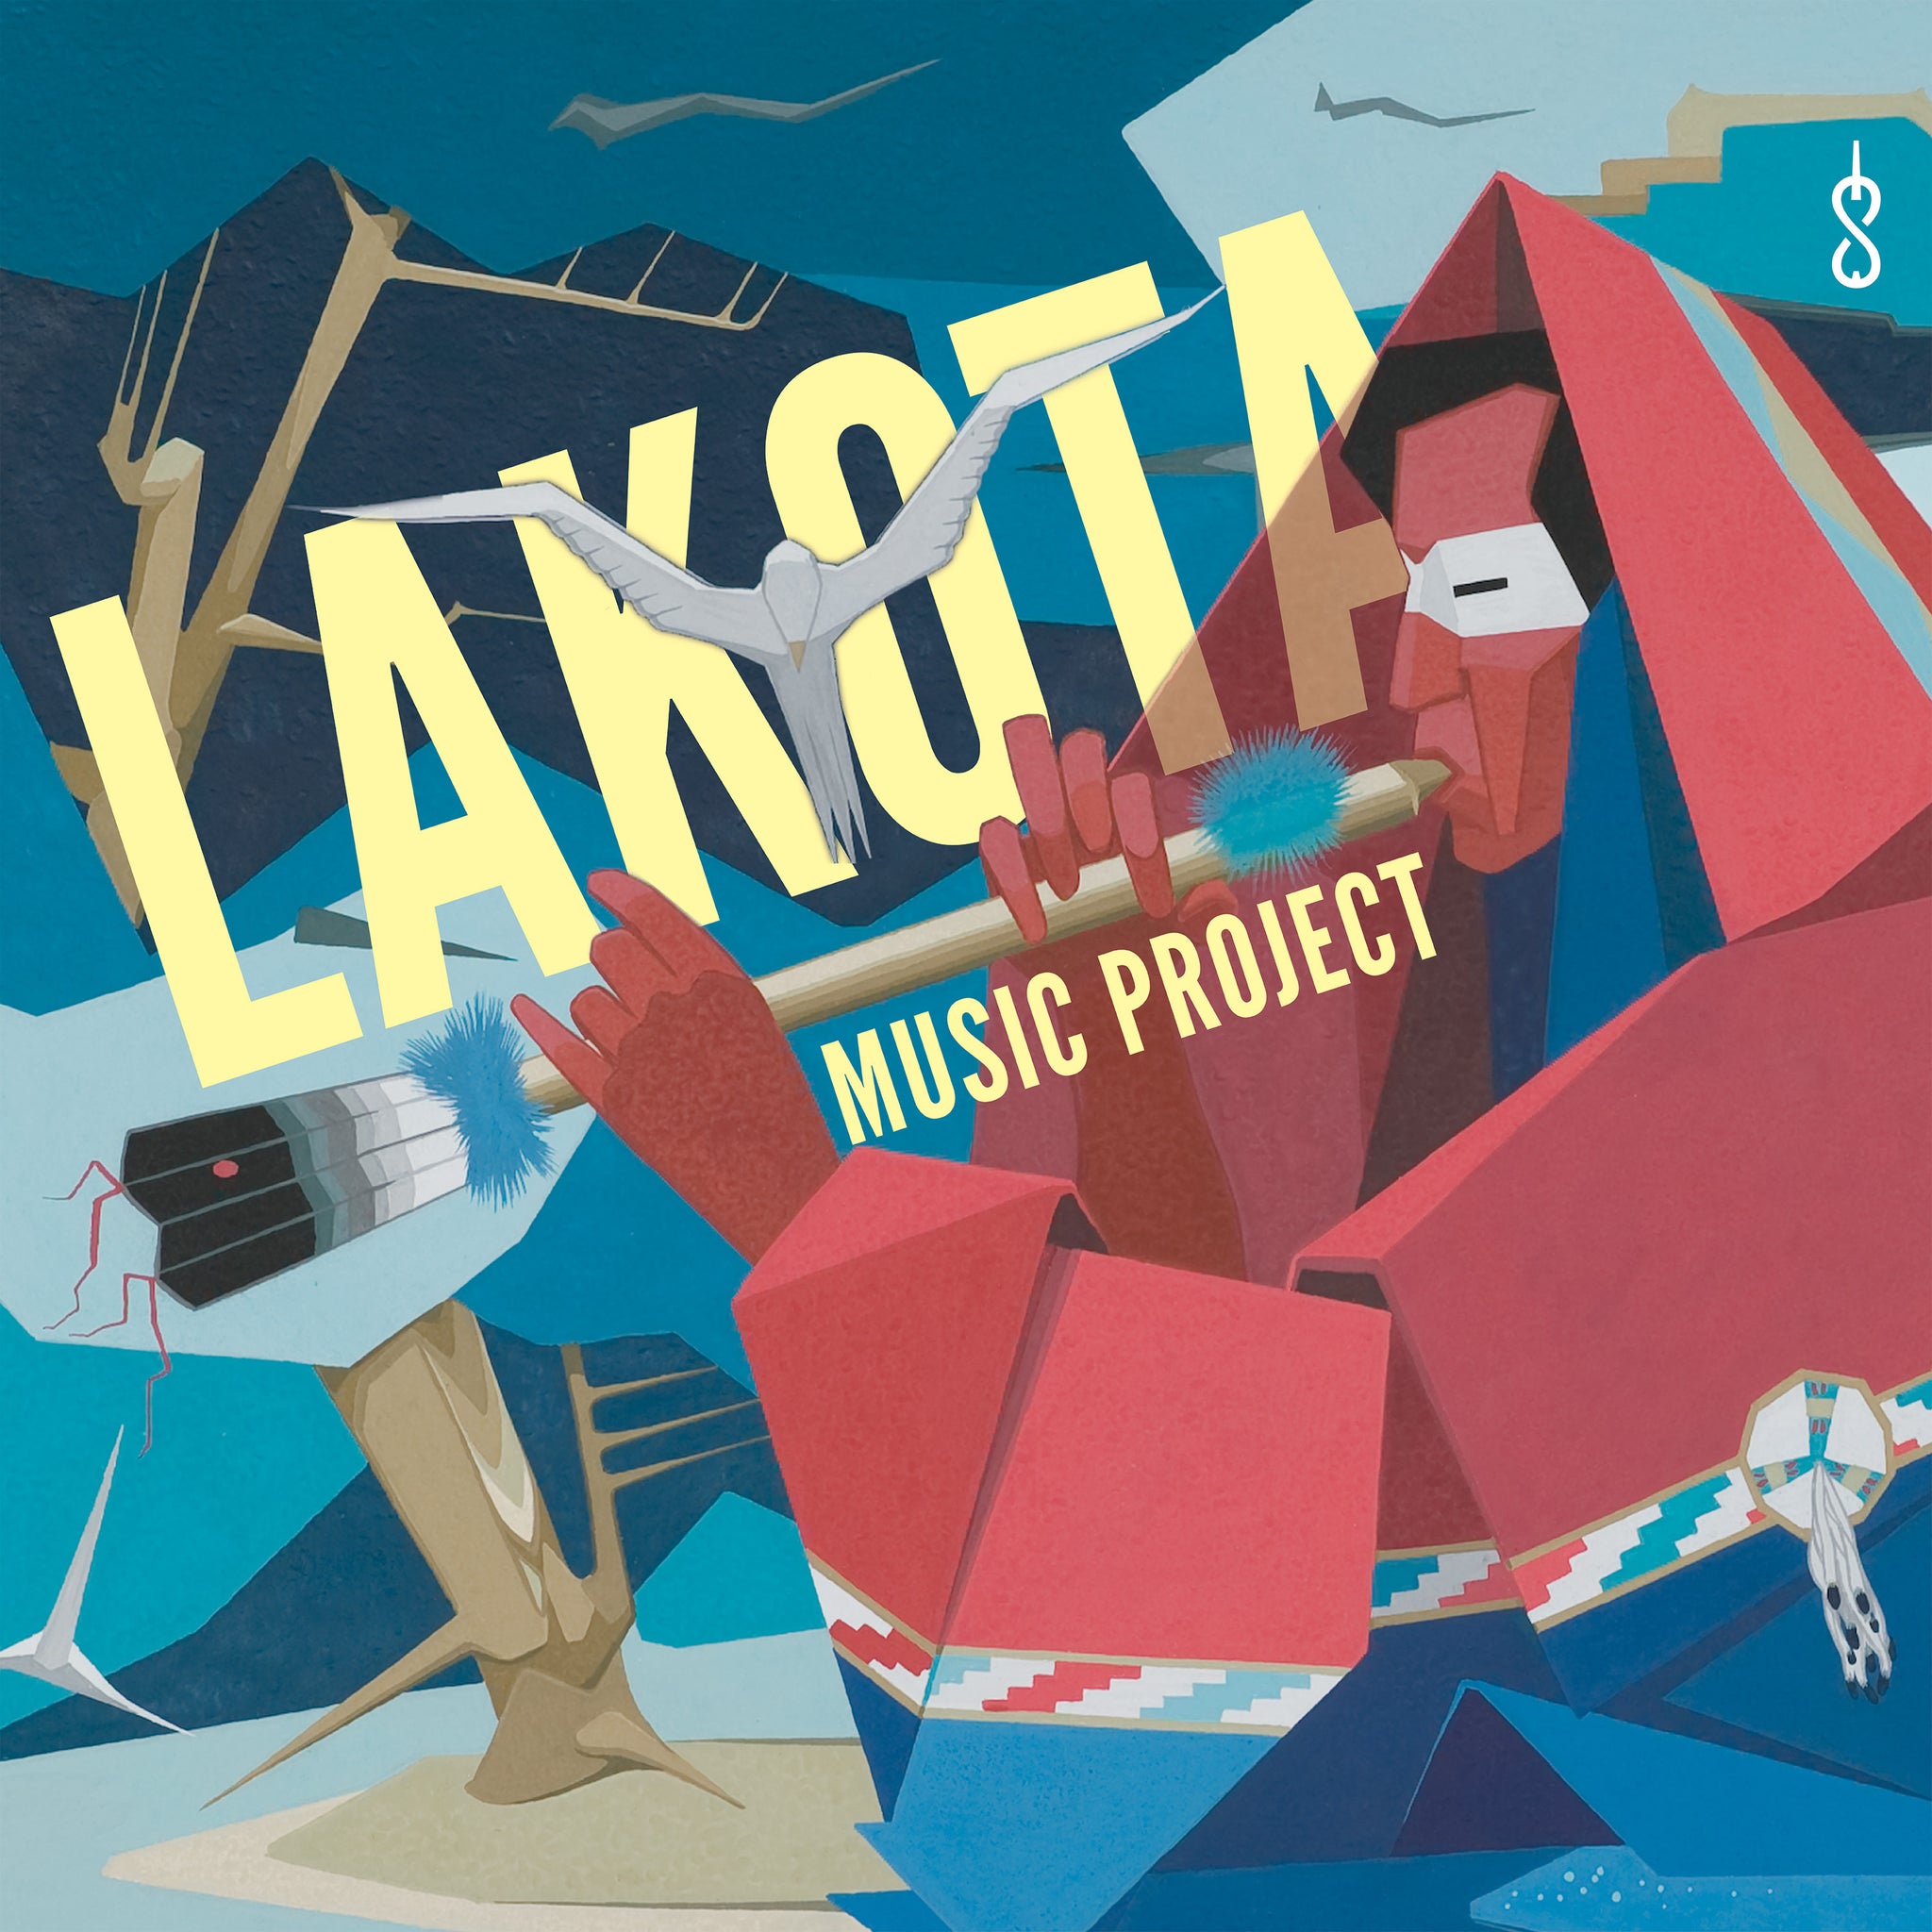 Davids, Paul, Tate & Wiprud: Lakota Music Project / South Dakota Symphony Orchestra